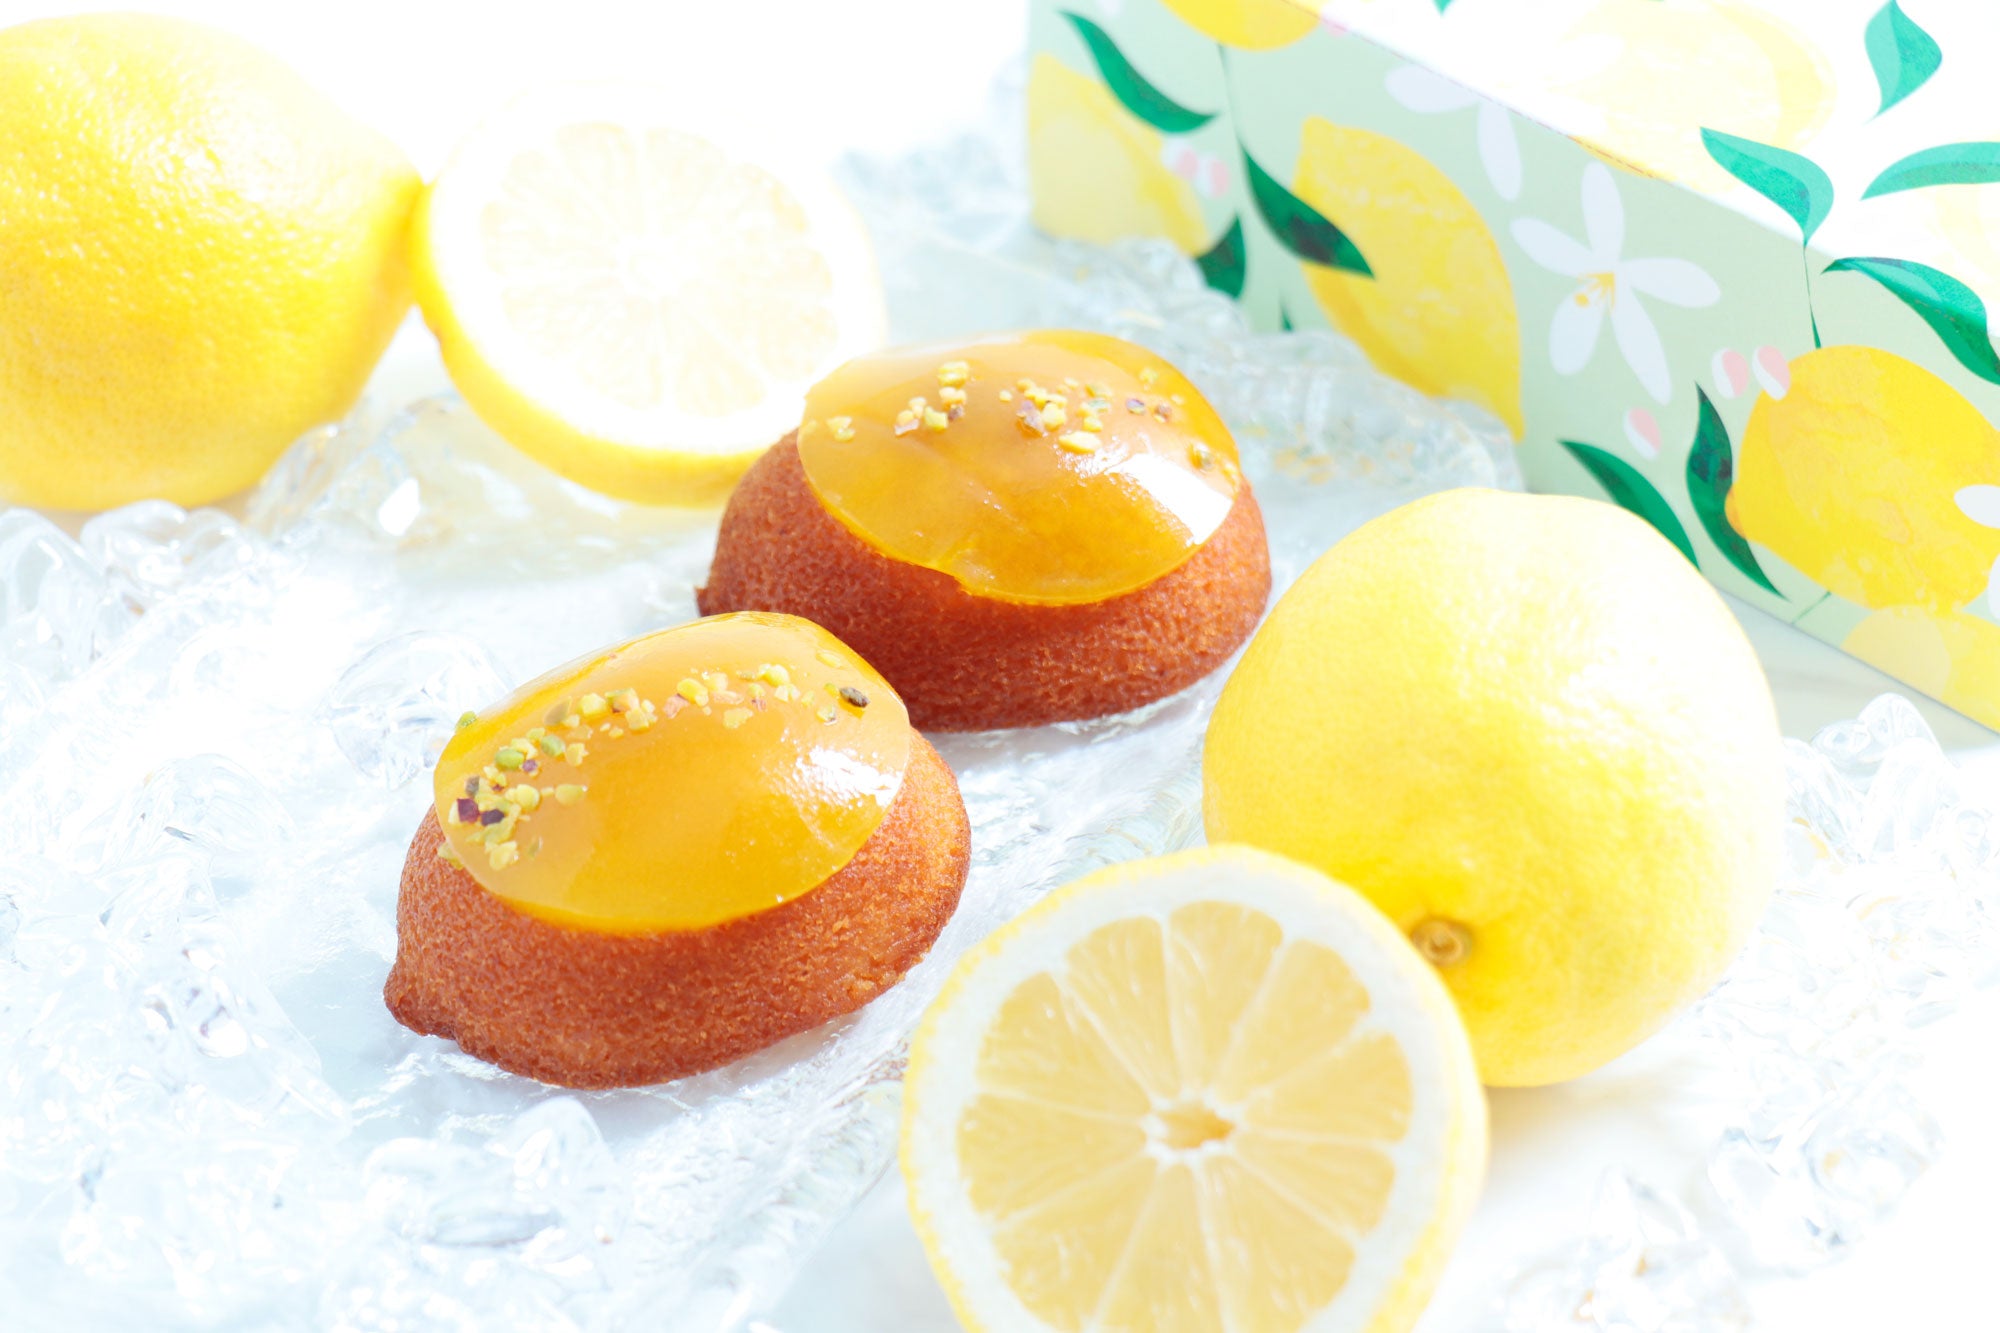 レモンのフレッシュな香りや酸味を楽しむ新作焼菓子が登場！旬のフルーツをテーマにした遊び心溢れるプチガトーにもご注目ください。